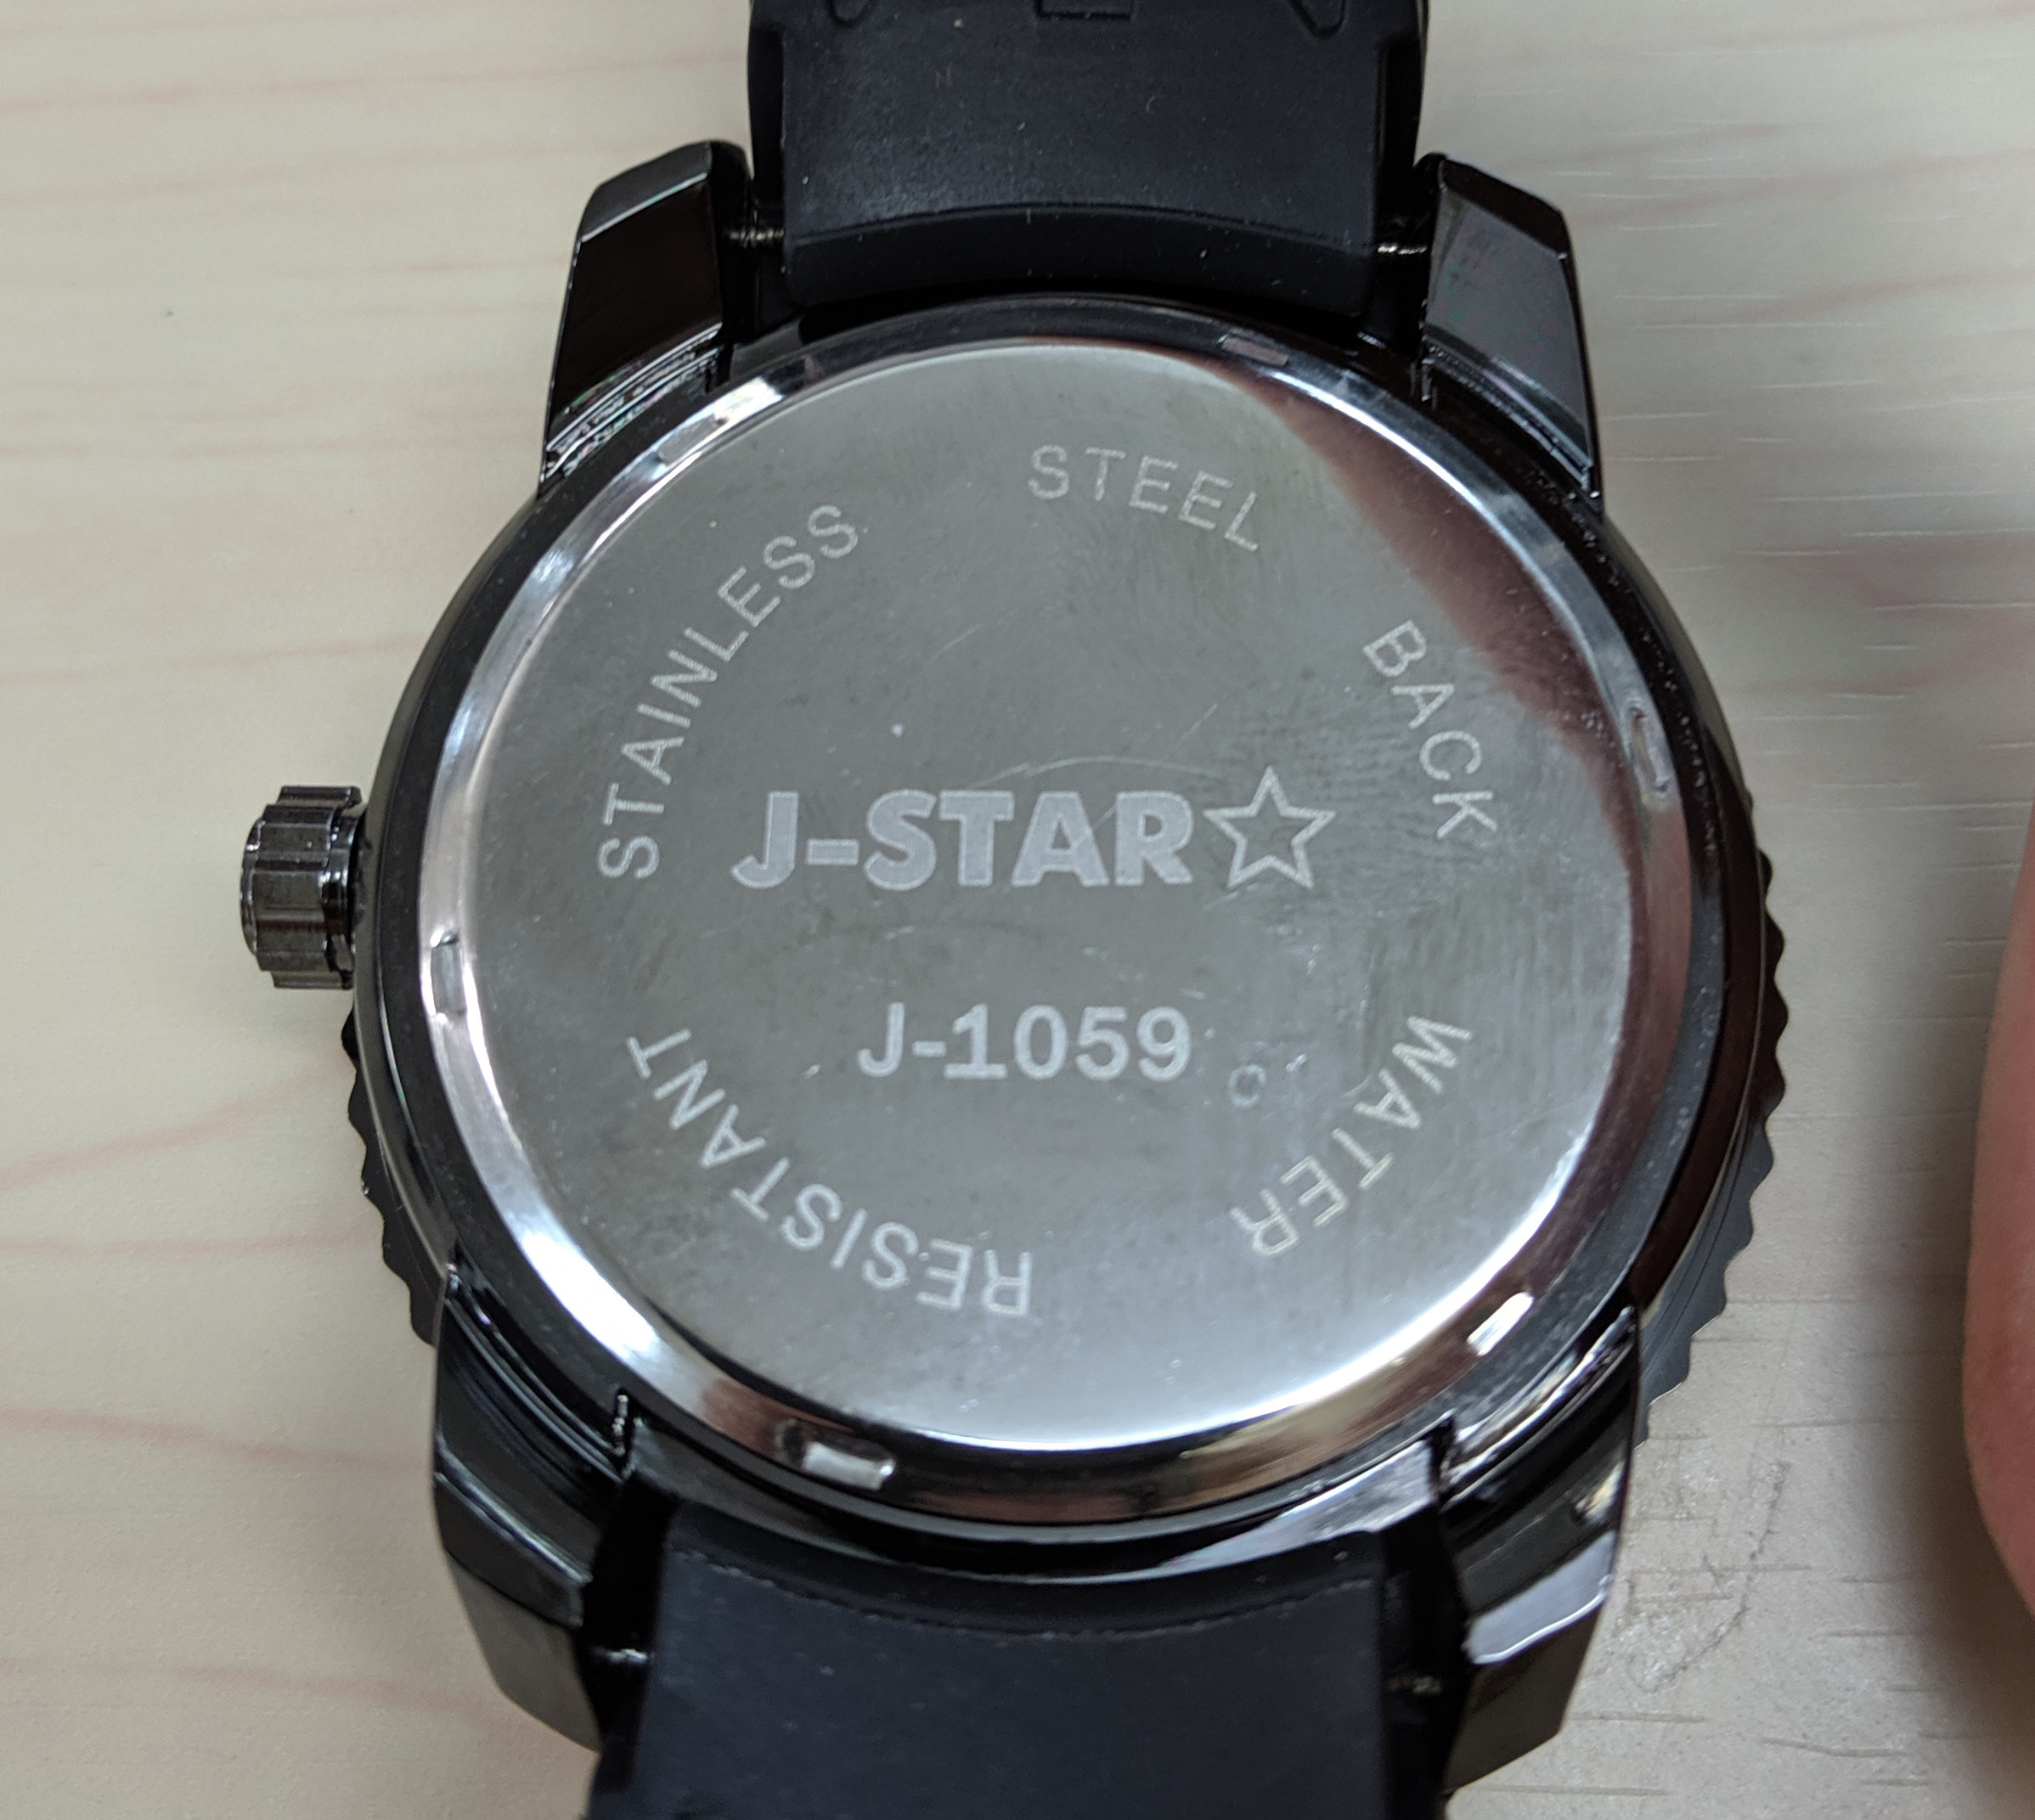 検証 閉店セール 今だけ1000円 のお店で腕時計を買って その販売価格をネットで調べてみた ロケットニュース24